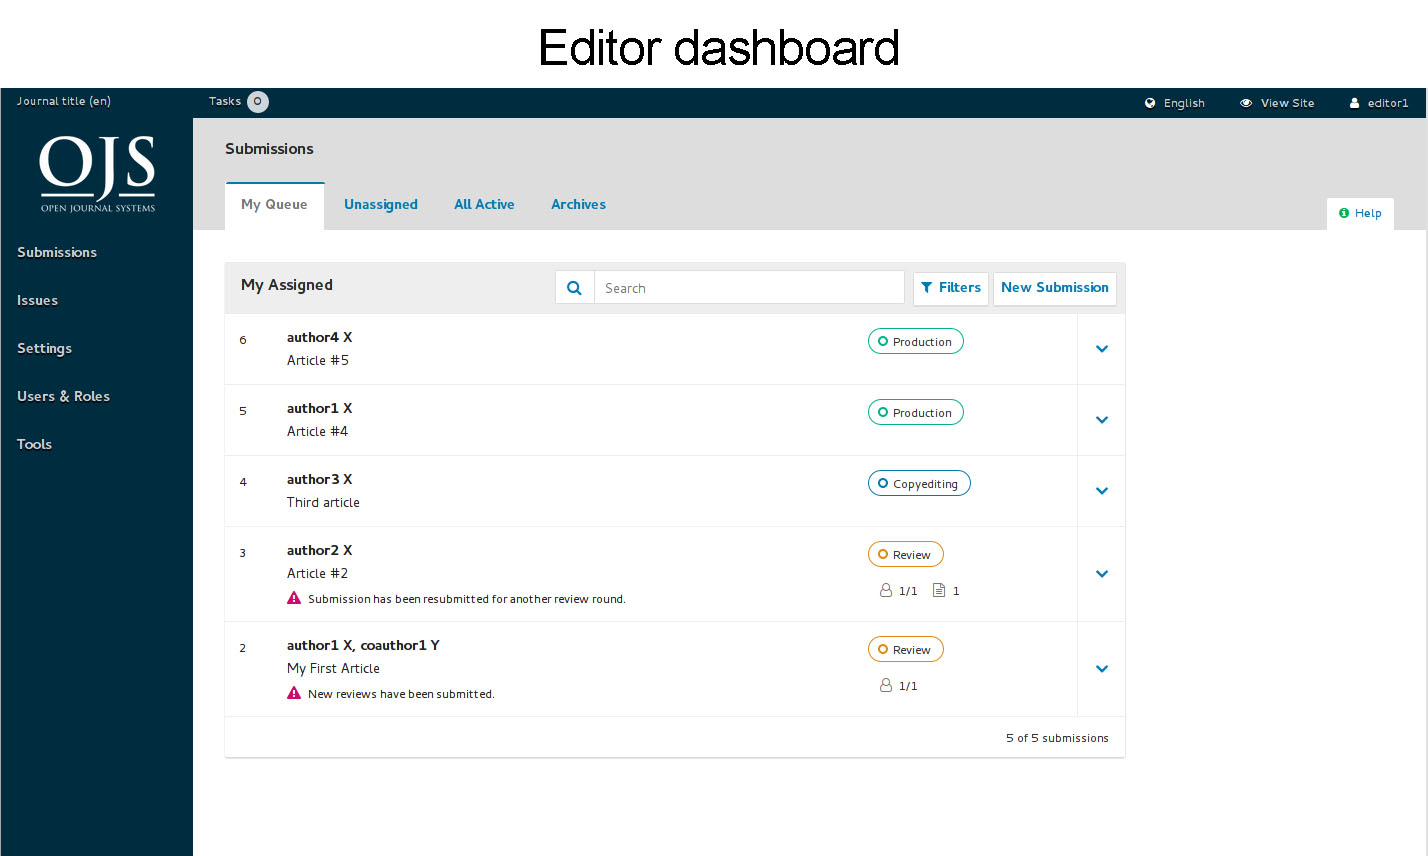 ojs-dashboard-editor